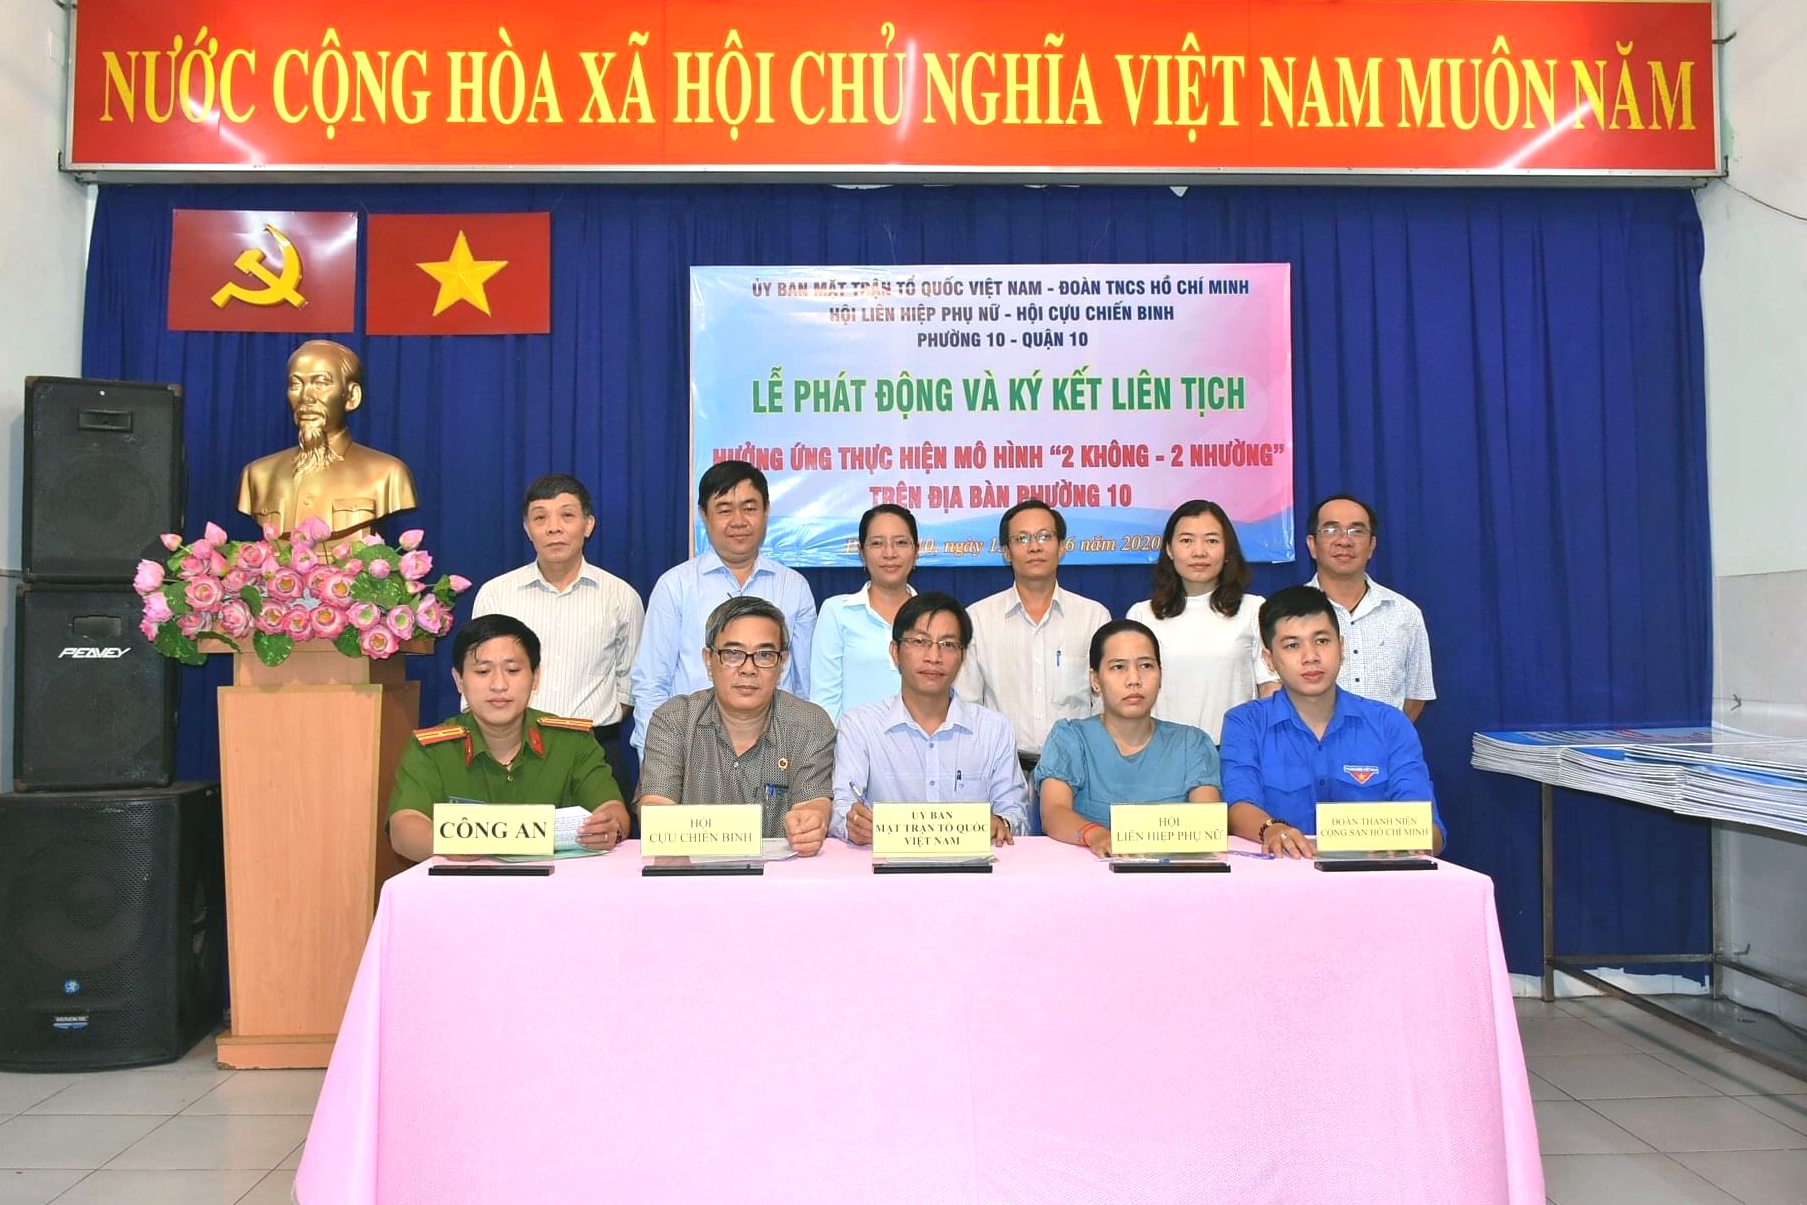 Image: Mặt trận Tổ quốc Việt Nam và các ban ngành đoàn thể Phường 10 tổ chức Lễ phát động, ký kết liên tịch hưởng ứng thực hiện mô hình "2 KHÔNG – 2 NHƯỜNG”